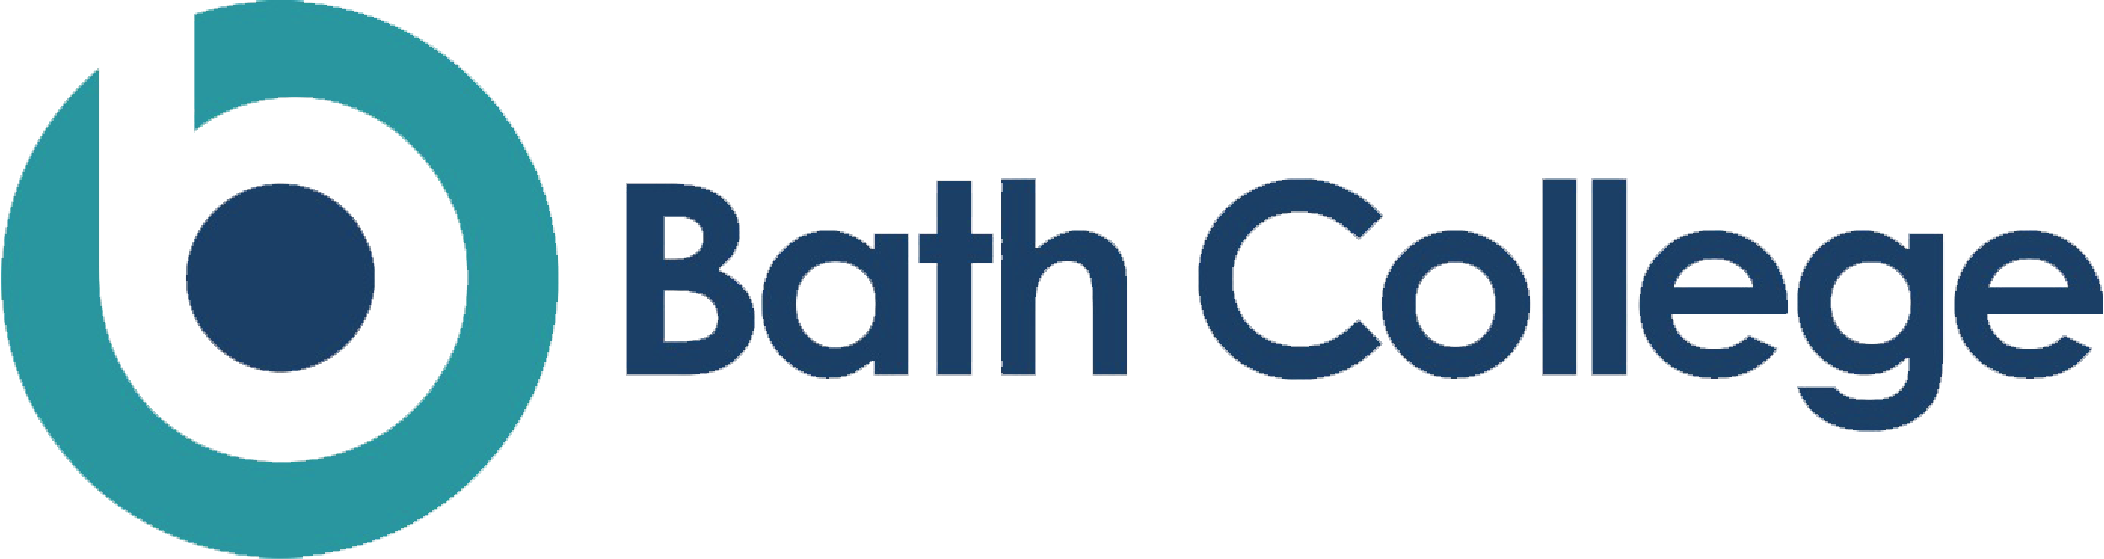 bath college logo